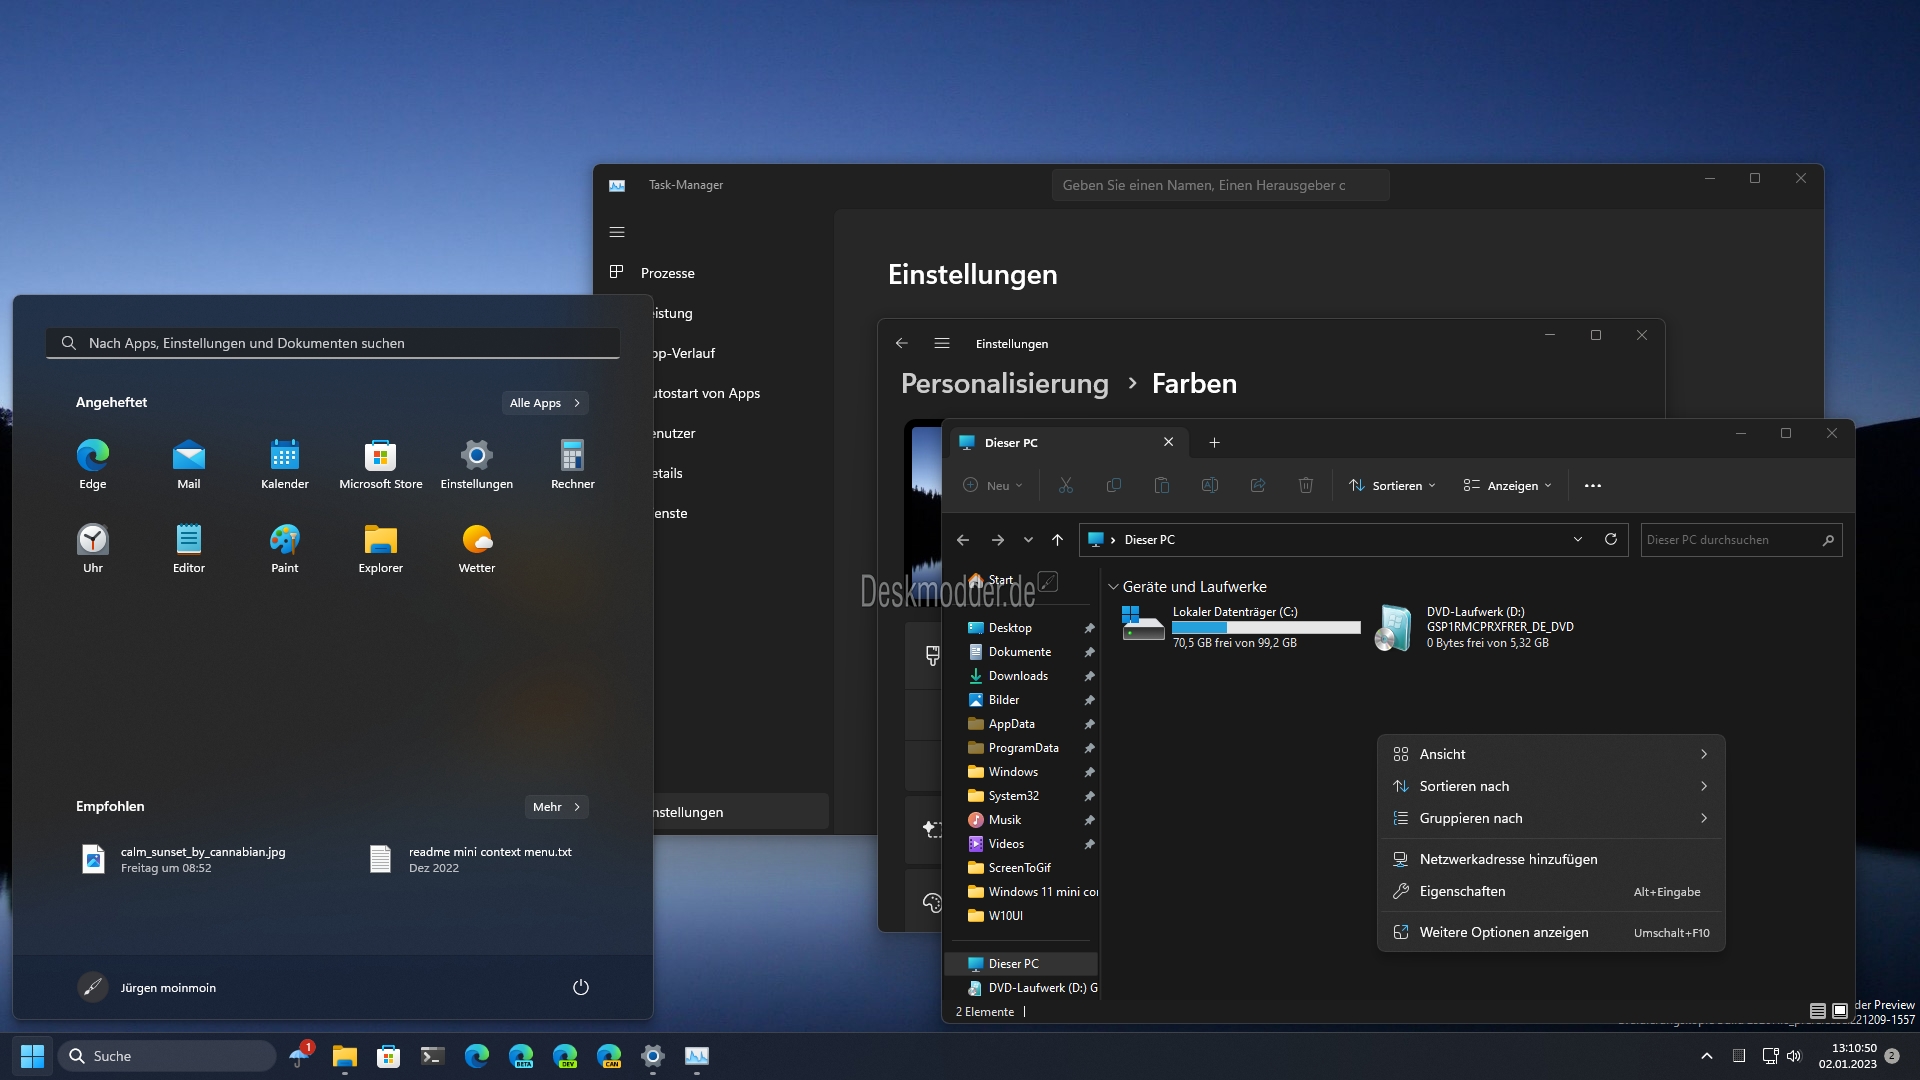 Windows 11 bringt neue Möglichkeiten zur Mauszeigeranpassung
Erweiterte Mauszeigerpakete bieten eine Vielzahl neuer Designs